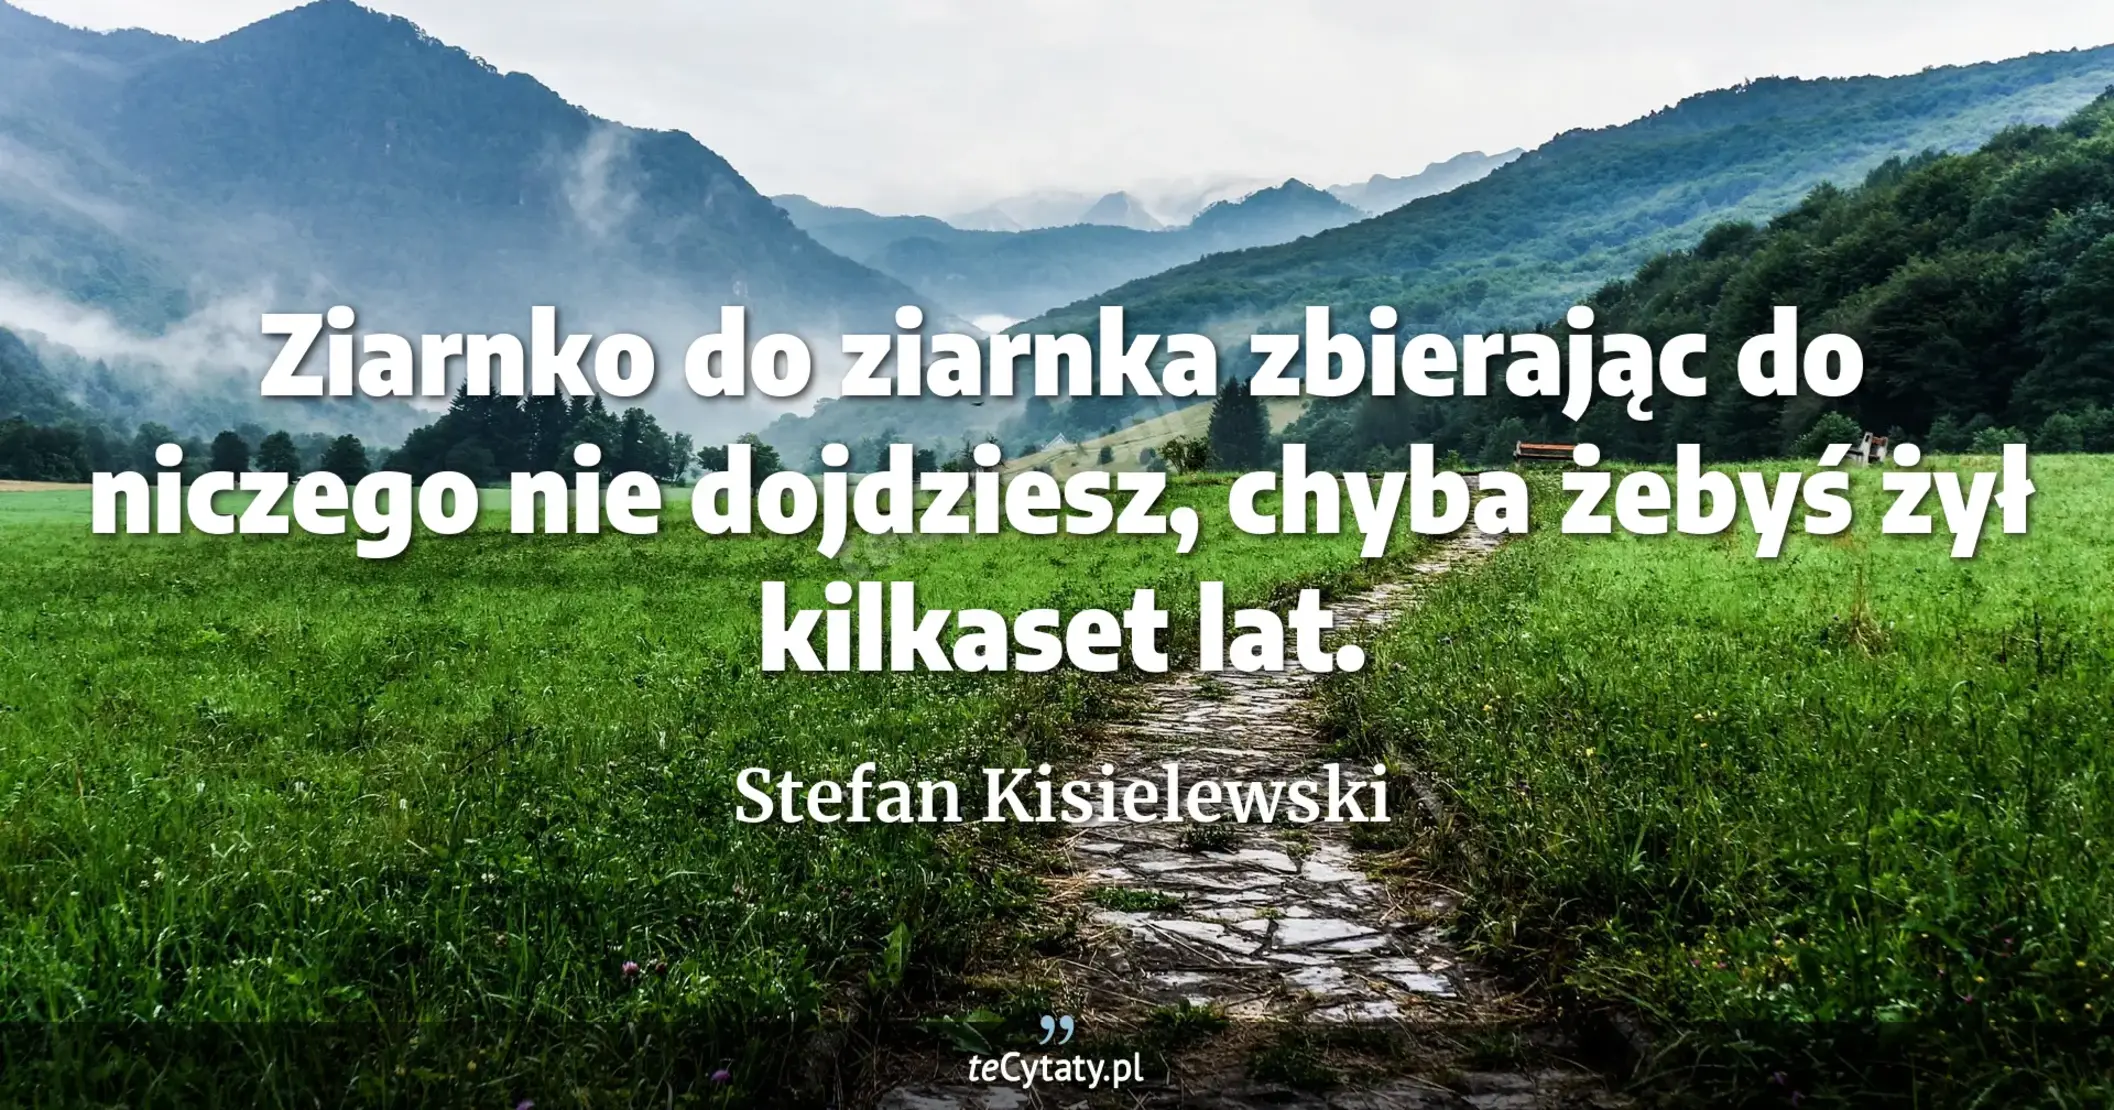 Ziarnko do ziarnka zbierając do niczego nie dojdziesz, chyba żebyś żył kilkaset lat. - Stefan Kisielewski